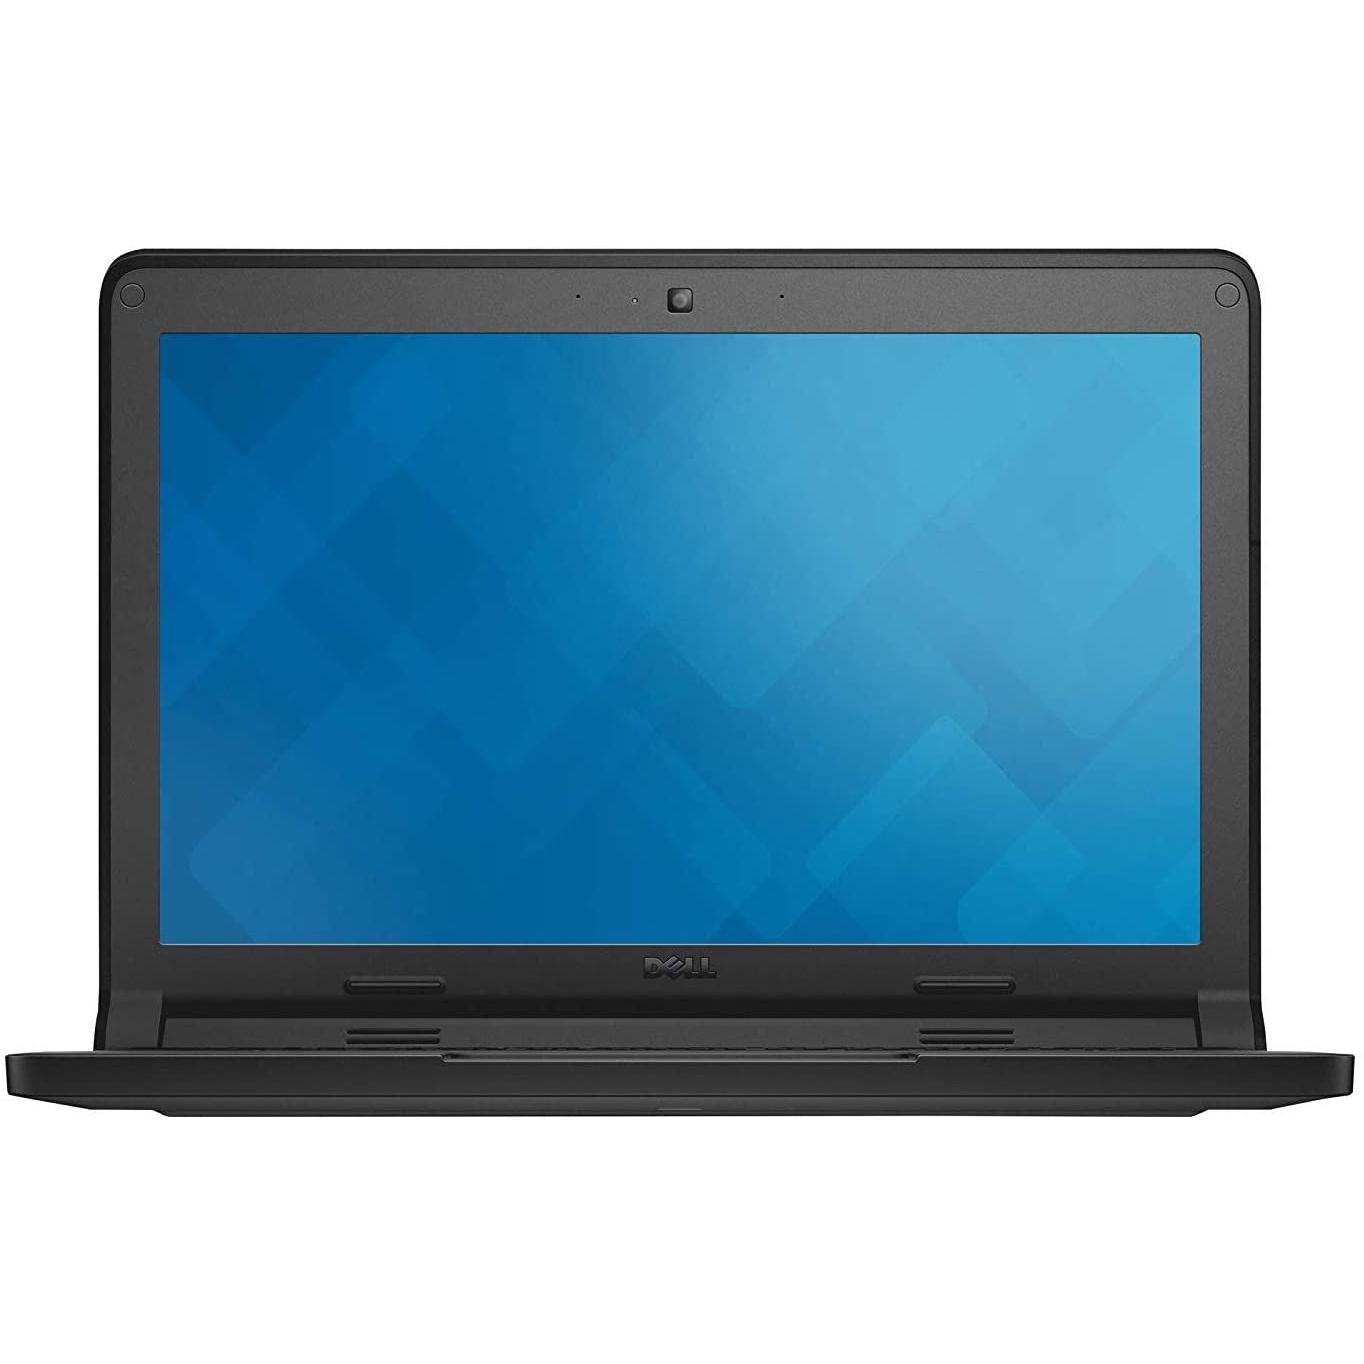 Dell Chromebook 11 P22T 11.6 Intel Celeron N2840 2.16 GHz 4GB RAM, 16GB SSD